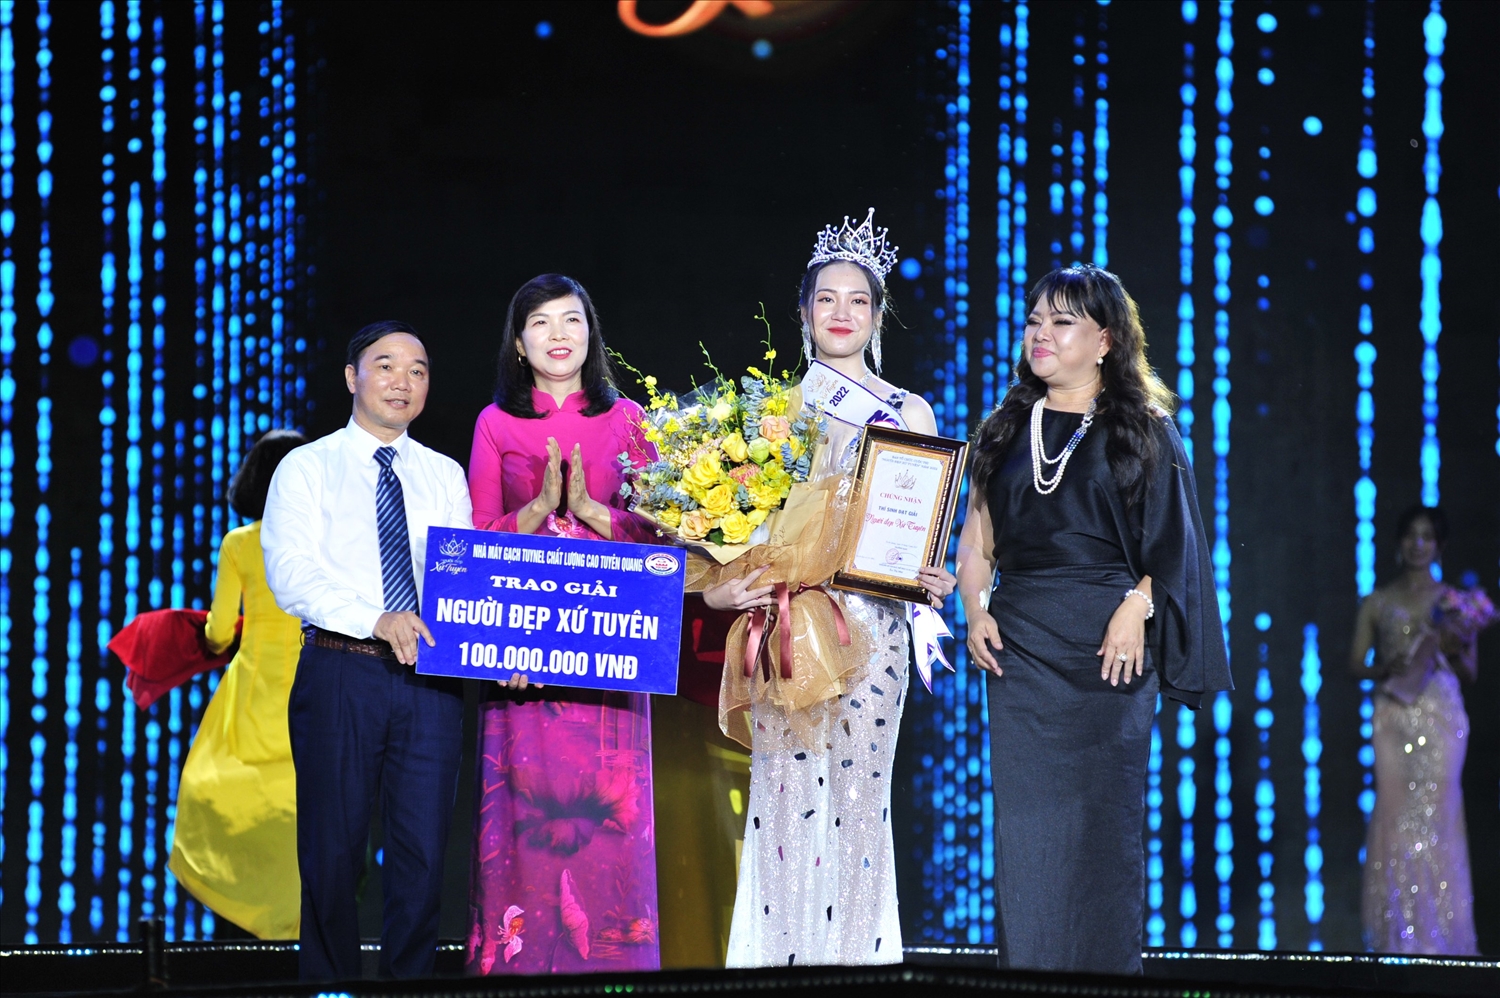 Phó Chủ tịch Thường trực HĐND tỉnh cùng các nhà tài trợ trao Danh hiệu và Vương niệm Người đẹp xứ Tuyên cho thí sinh Vũ Phương Thảo